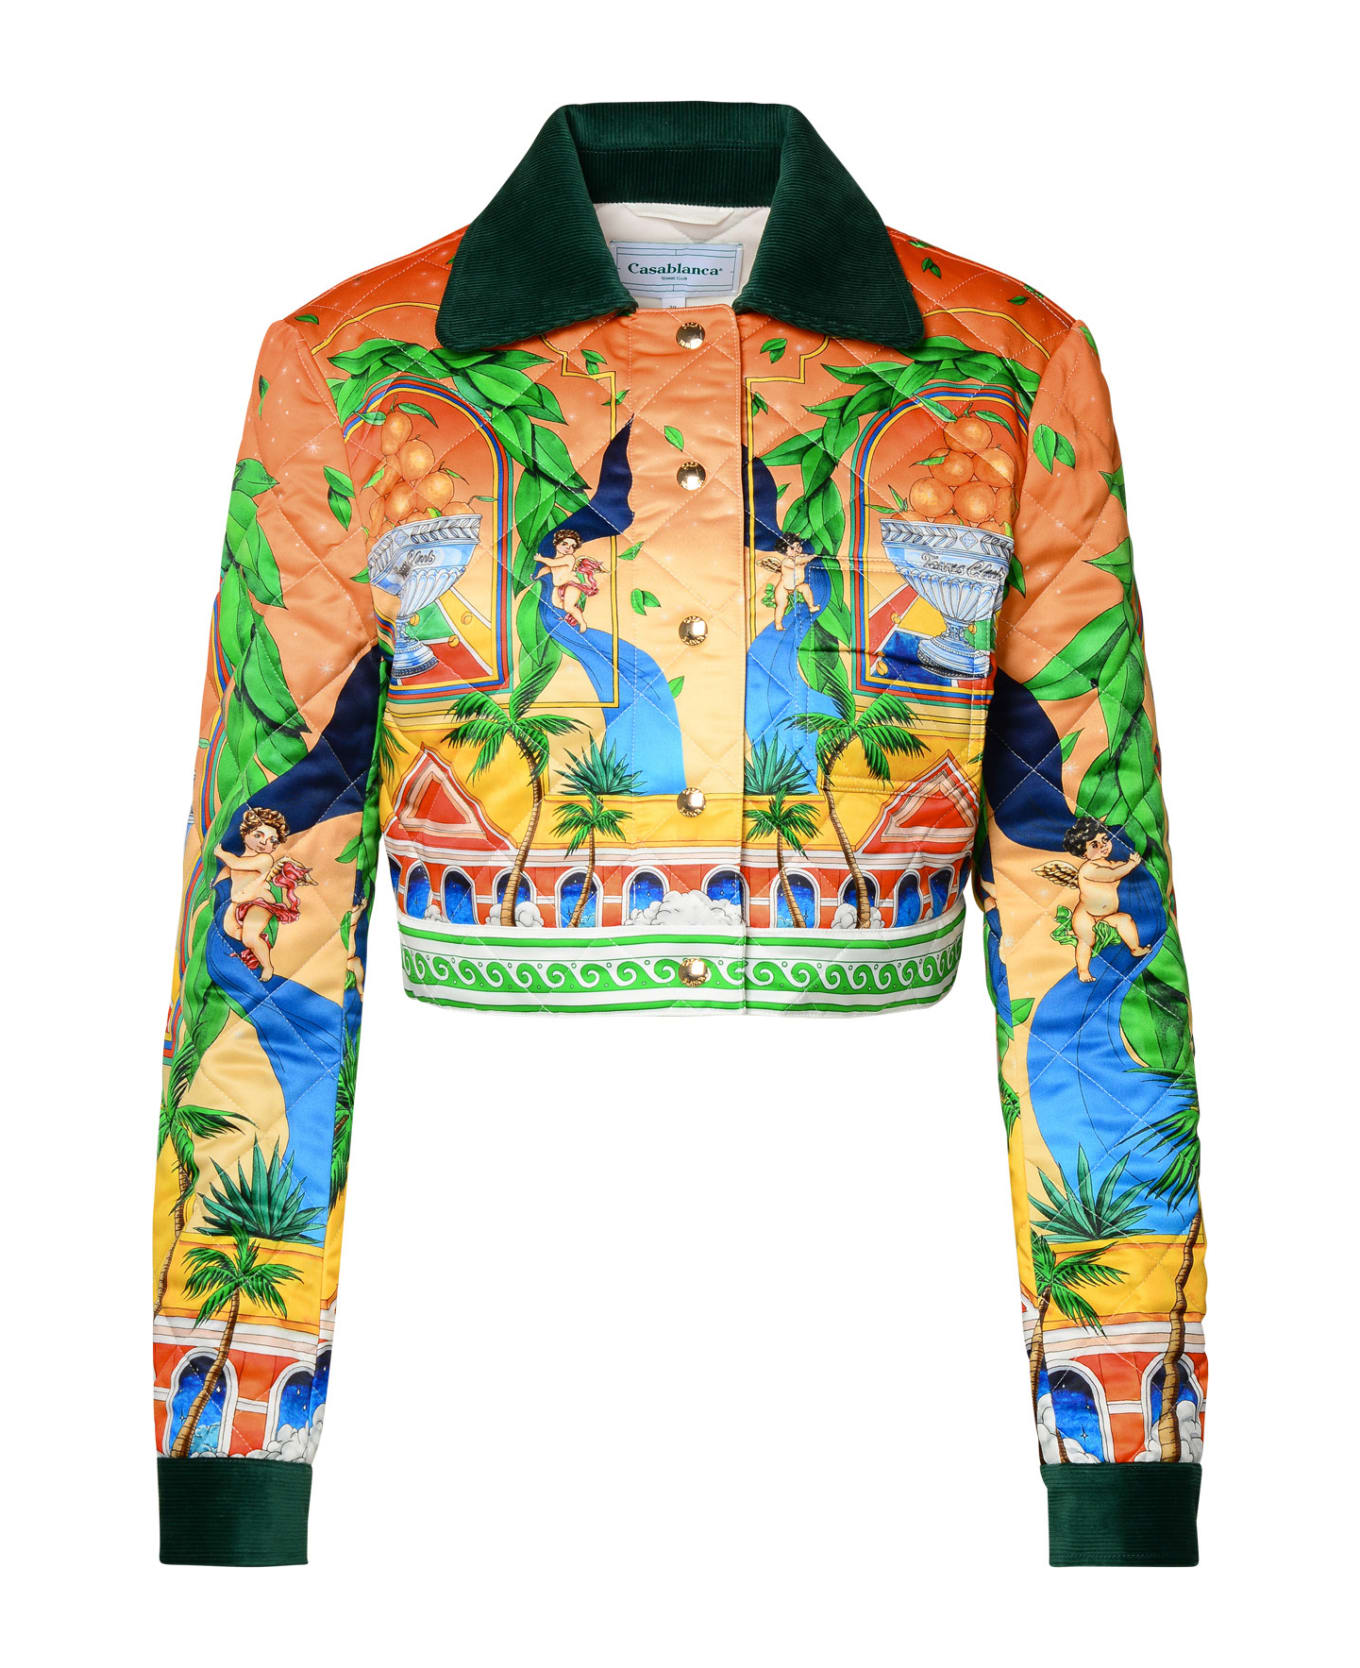 Casablanca Multicolor Polyester Jacket - ORANGE/GREEN ジャケット